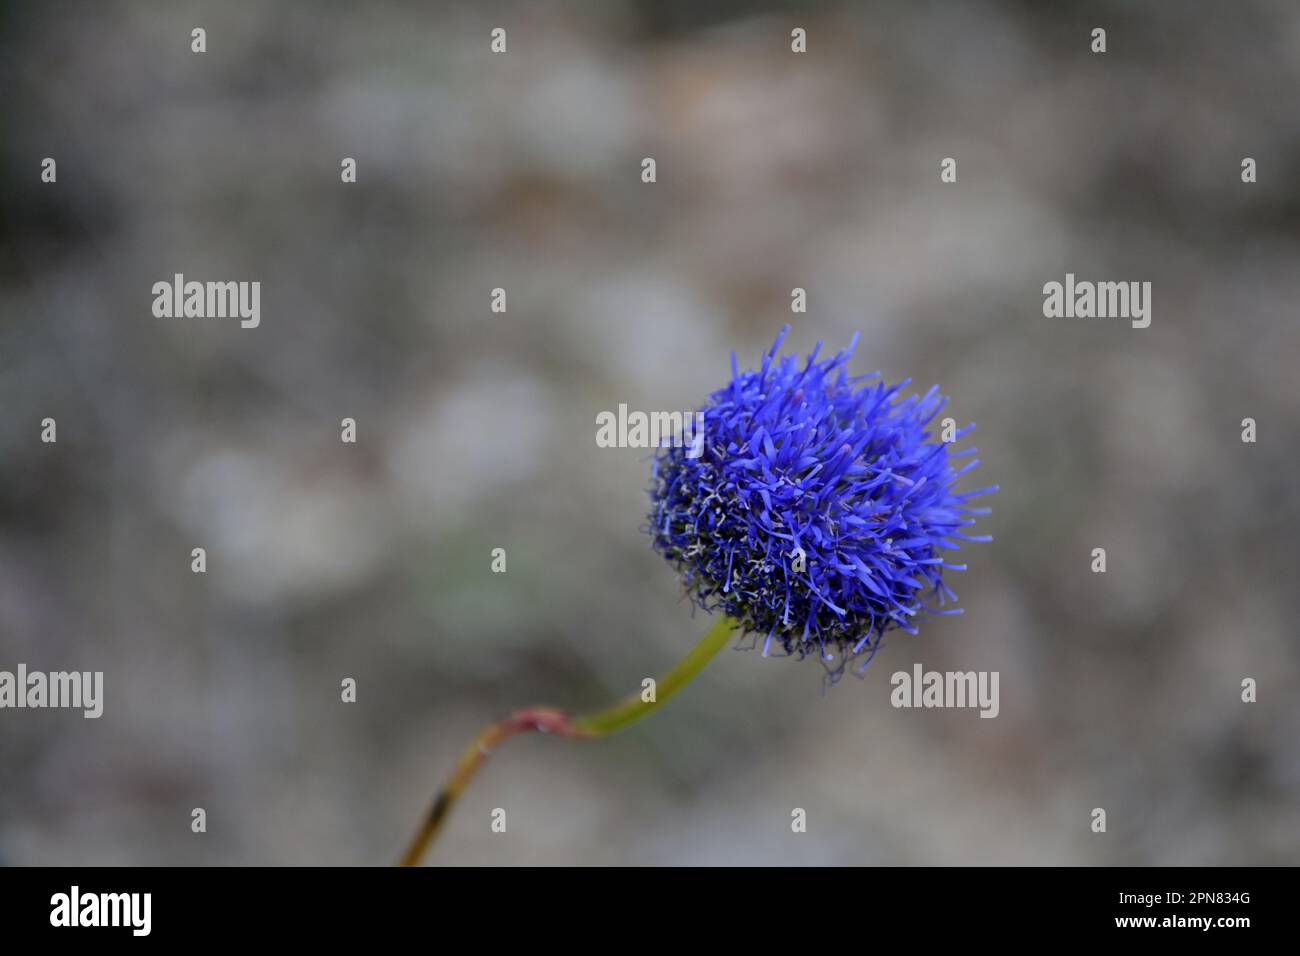 Nahaufnahme einer hellen bläulich-violetten Blüte einer Blume (Globularia). Horizontales Bild mit selektivem Fokus, verschwommenem Hintergrund und Kopierbereich Stockfoto